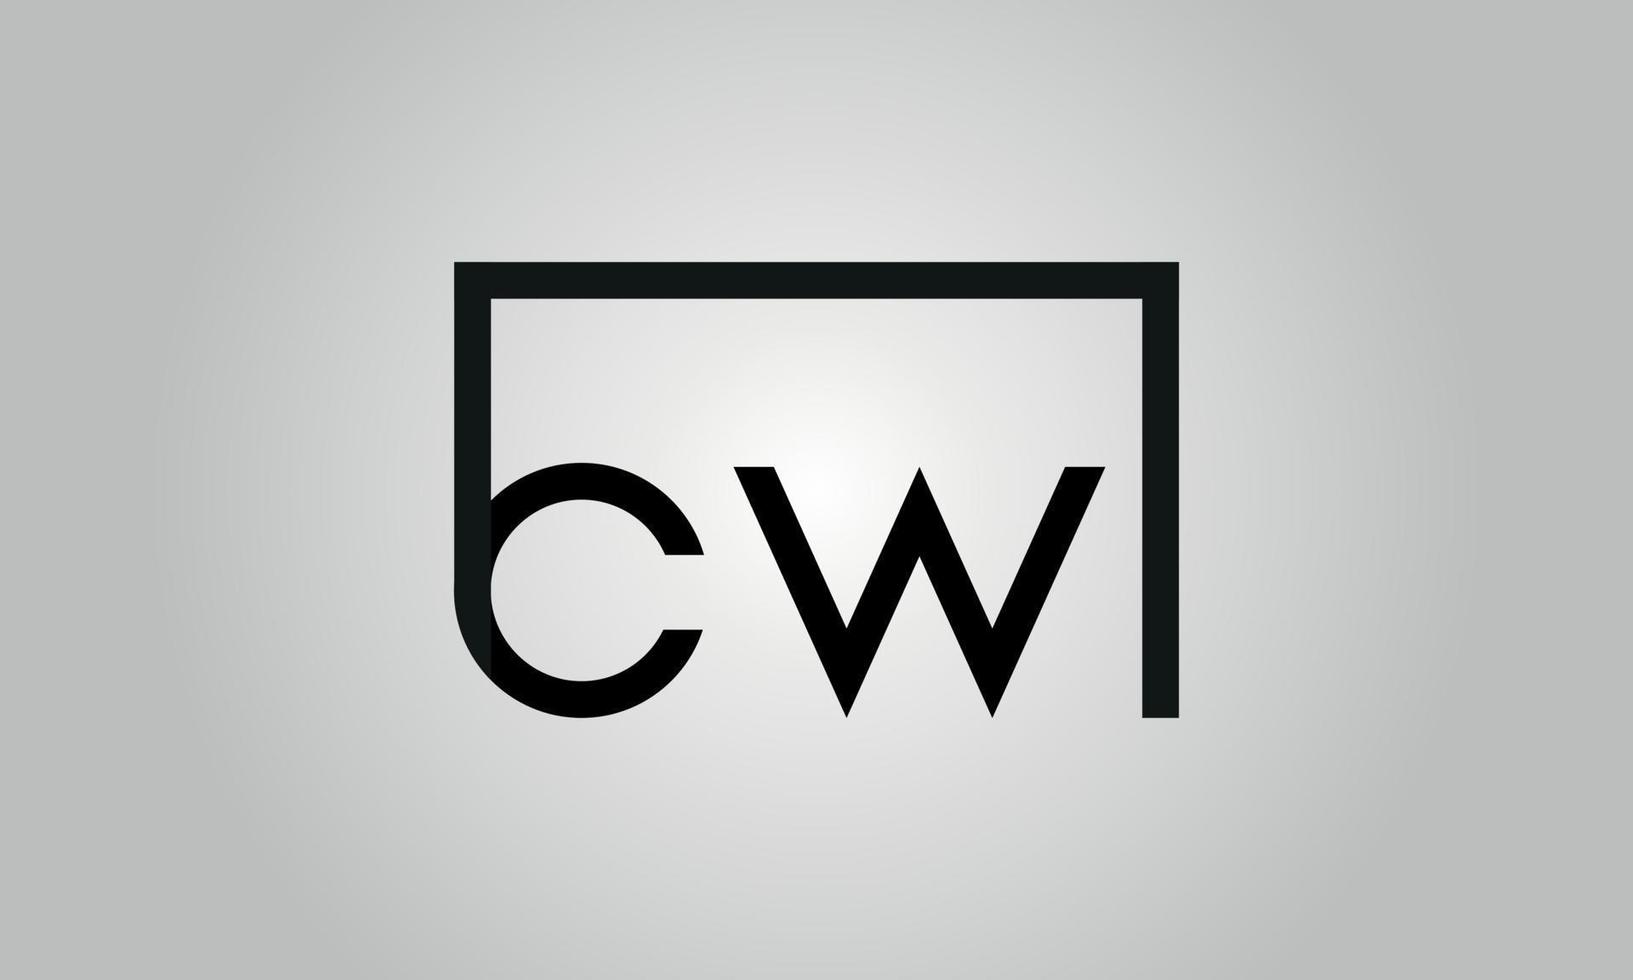 Buchstabe cw-Logo-Design. cw-Logo mit quadratischer Form in schwarzen Farben Vektor kostenlose Vektorvorlage.